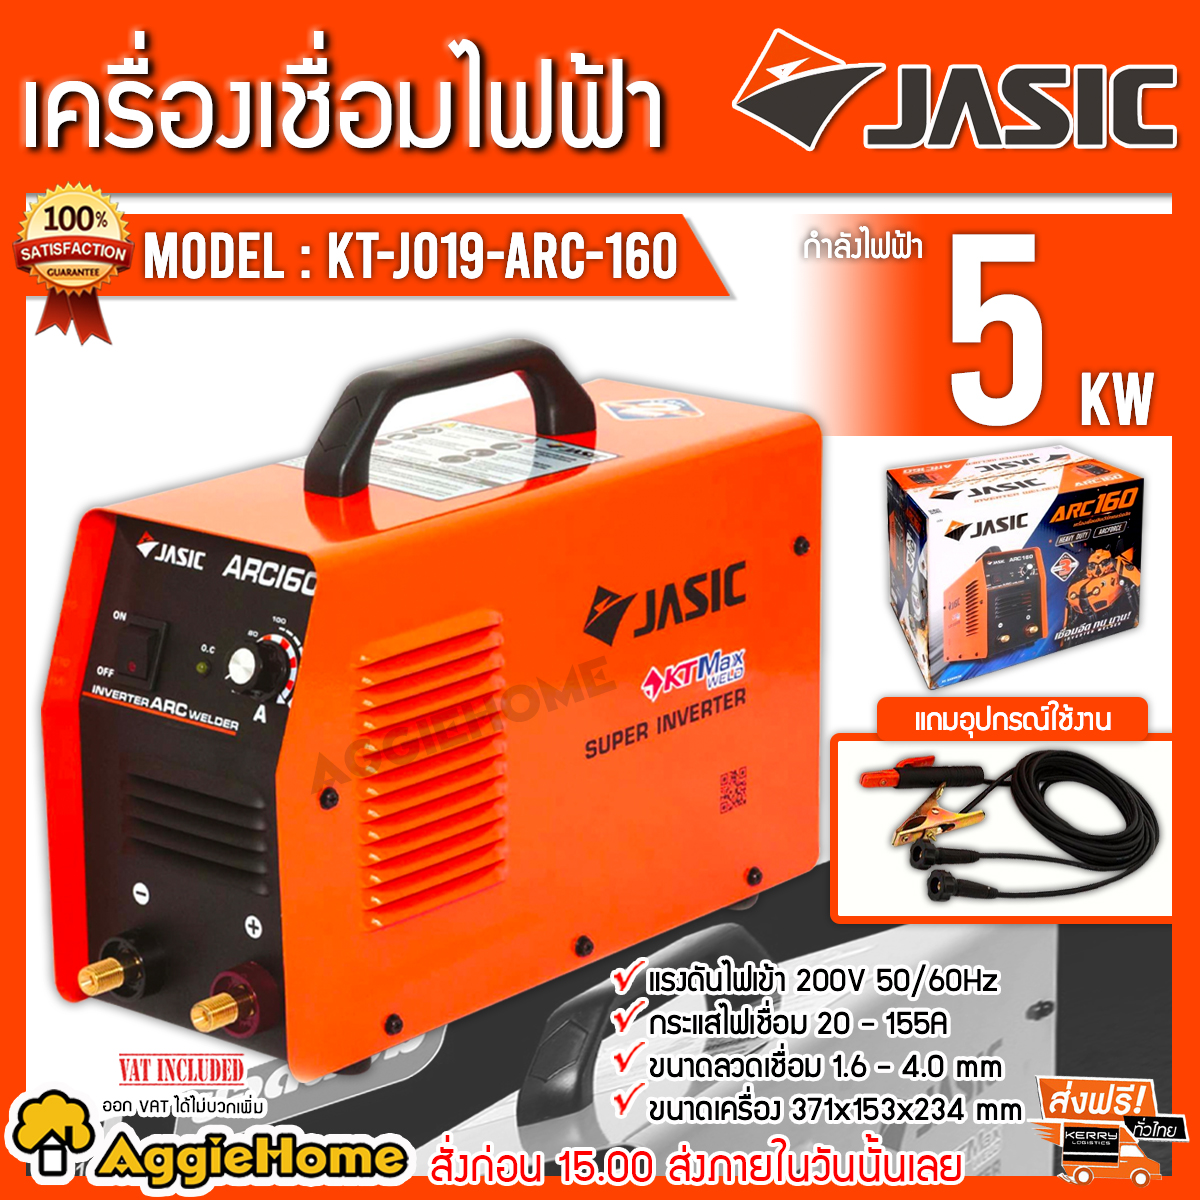 JASIC ตู้เชื่อม เครื่องเชื่อมไฟฟ้า รุ่น KT-J019-ARC-160 MMA